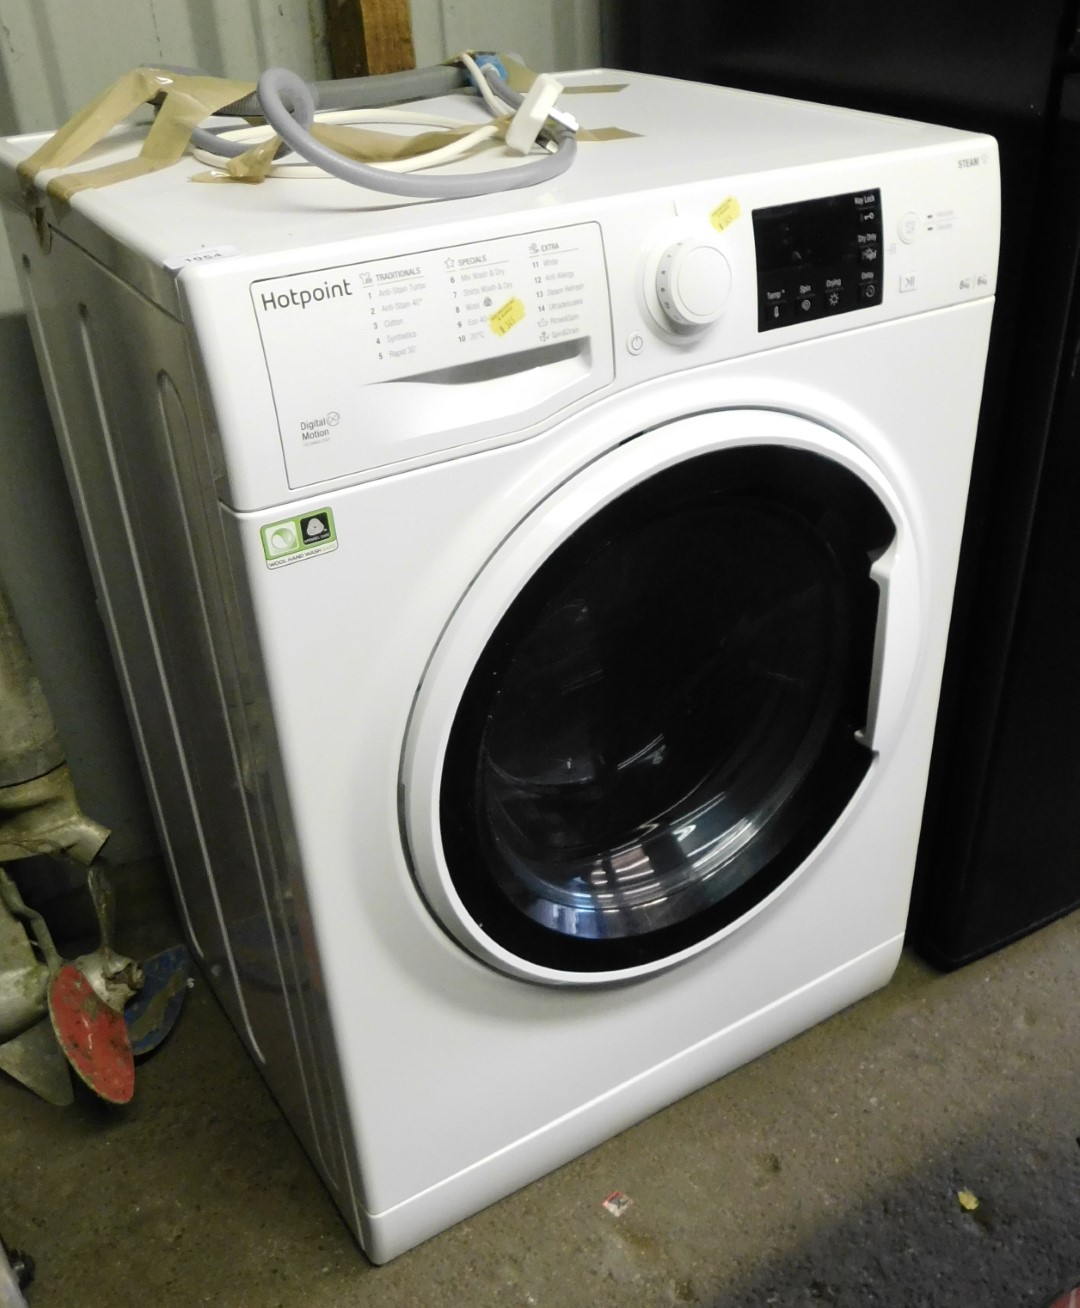 A Hotpoint 8kg washing machine.